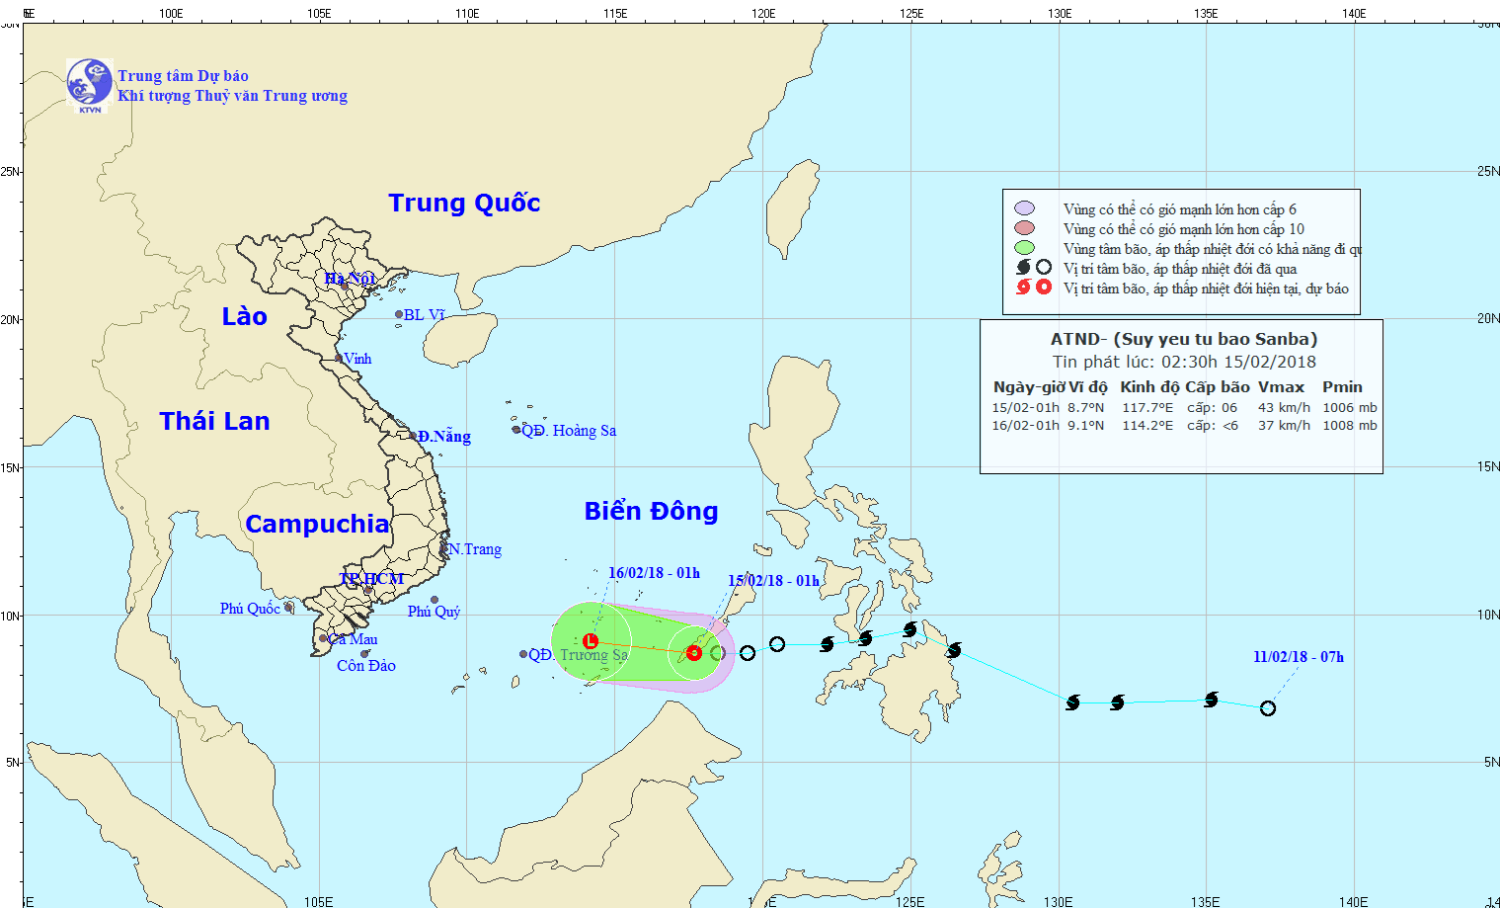 Tin áp thấp nhiệt đới gần Biển Đông (suy yếu từ bão Sanba)